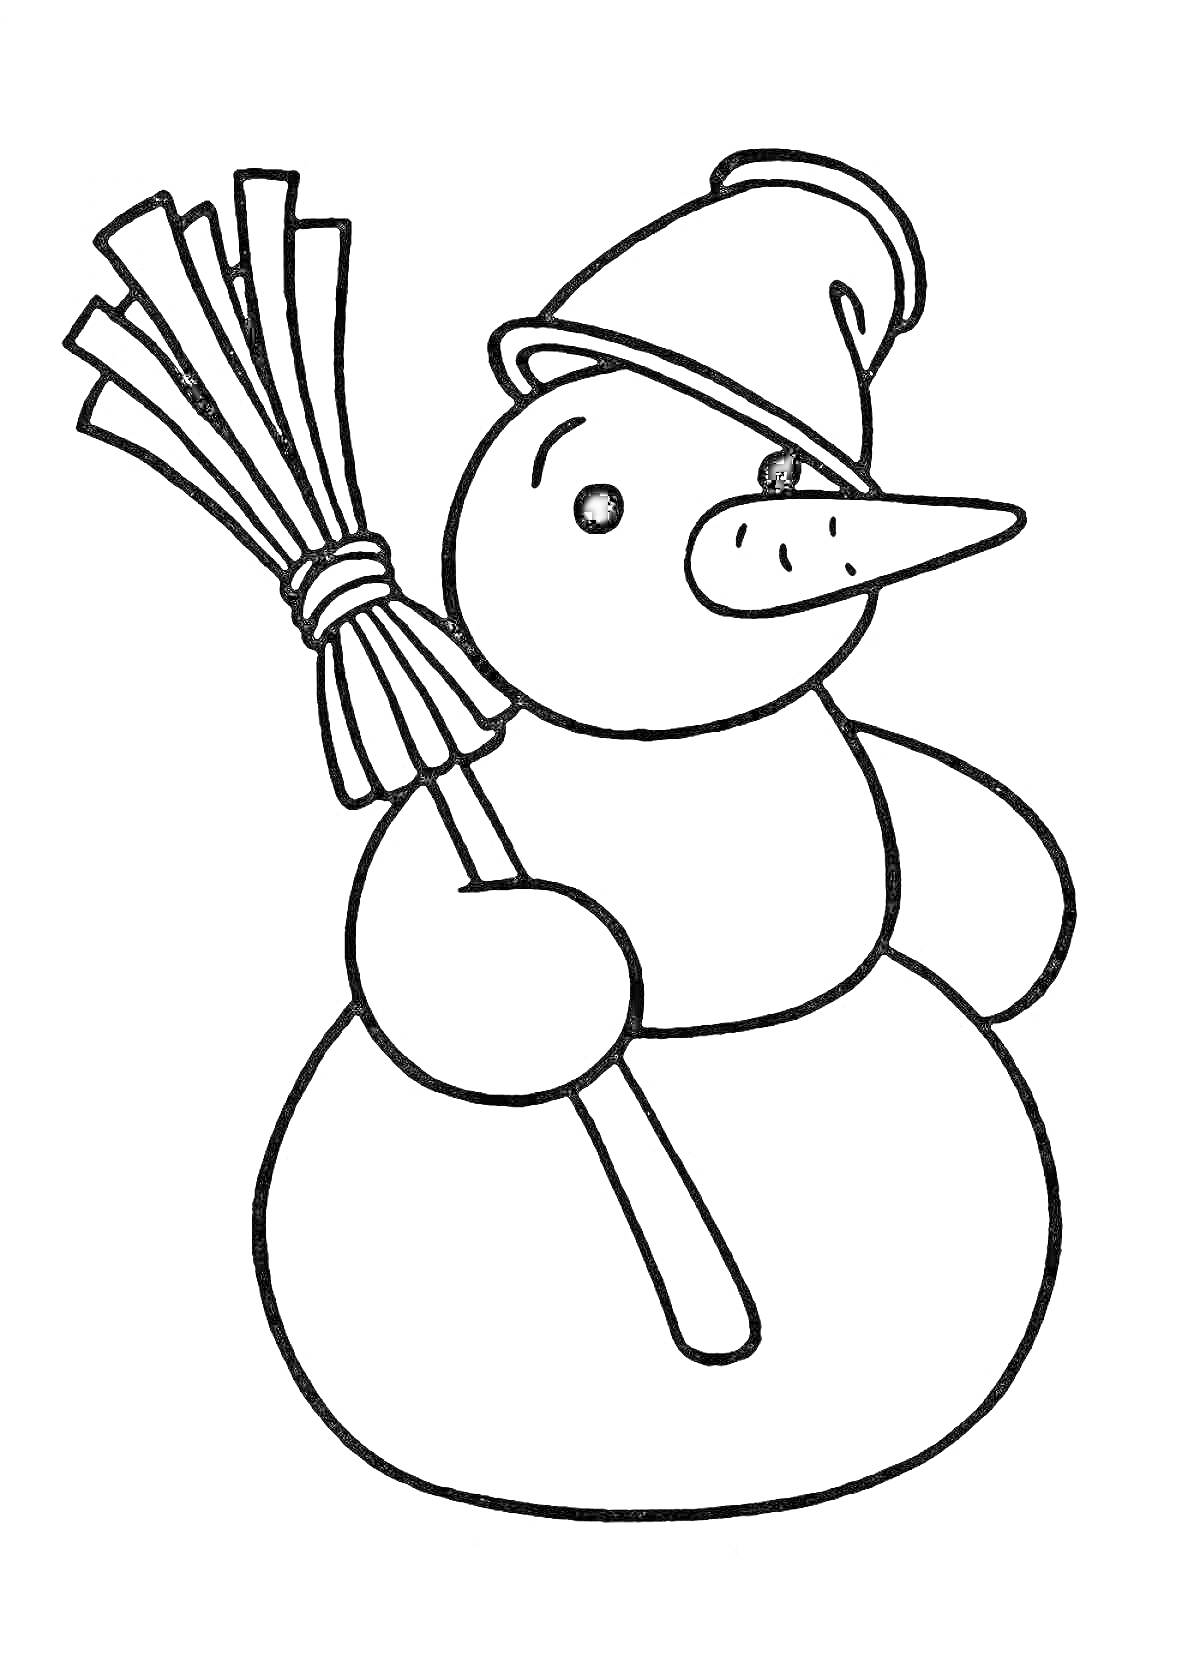 Раскраска Снеговик с метлой и шапкой для малышей